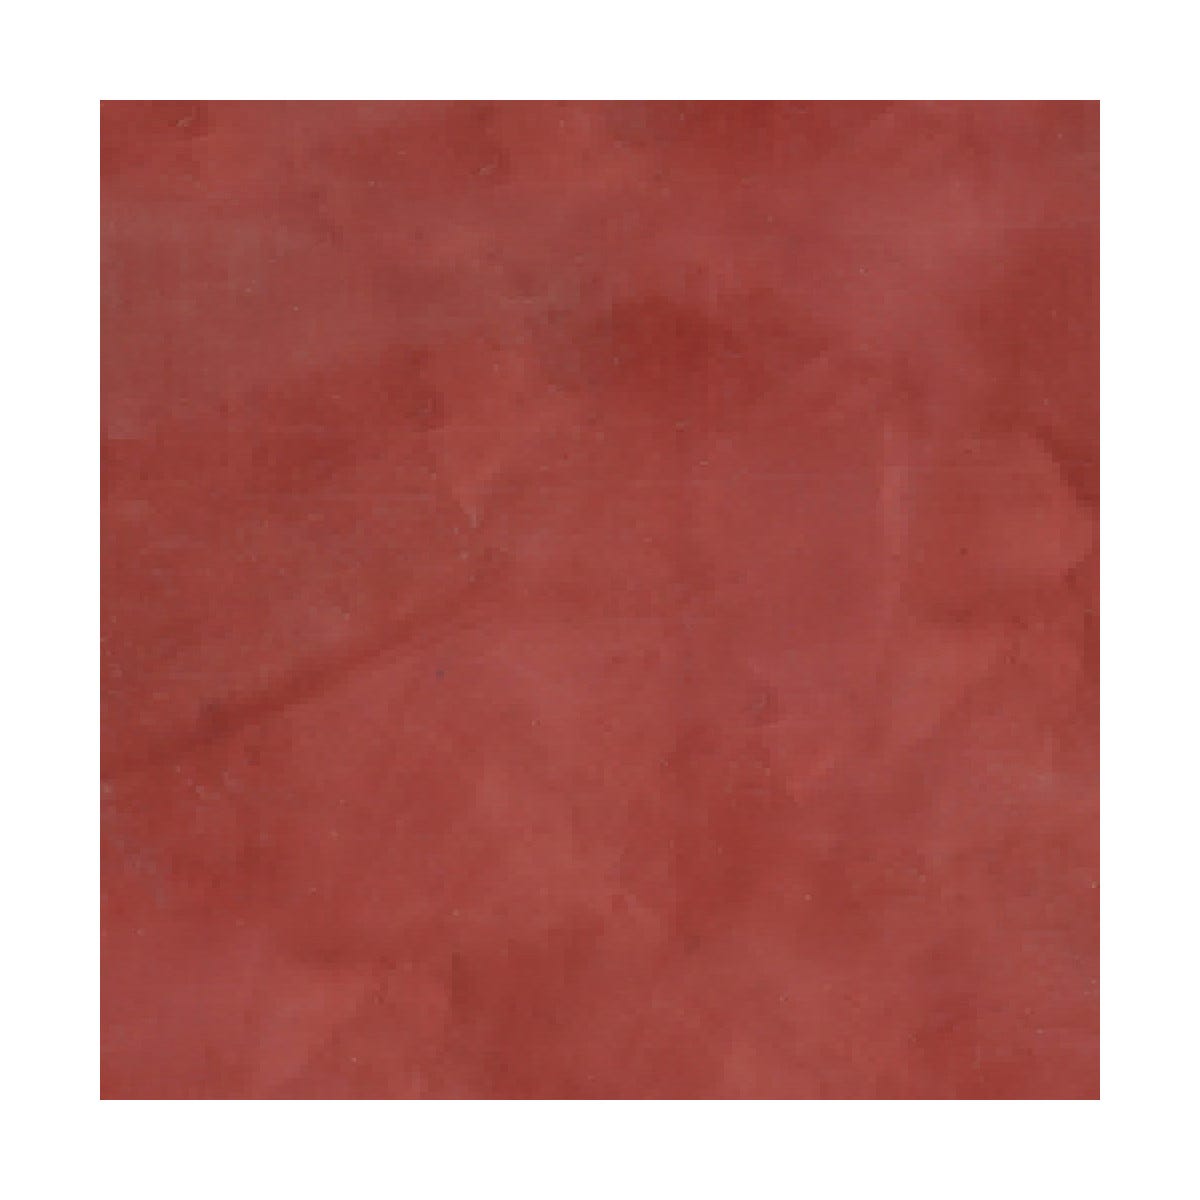 Mortier + teinte - stucco (sans primaire ni finition) - STUCCOLIS Mortier + teinte Rouge Oriental - kit jusqu'à 7 m²ARCANE INDUSTRIES 1